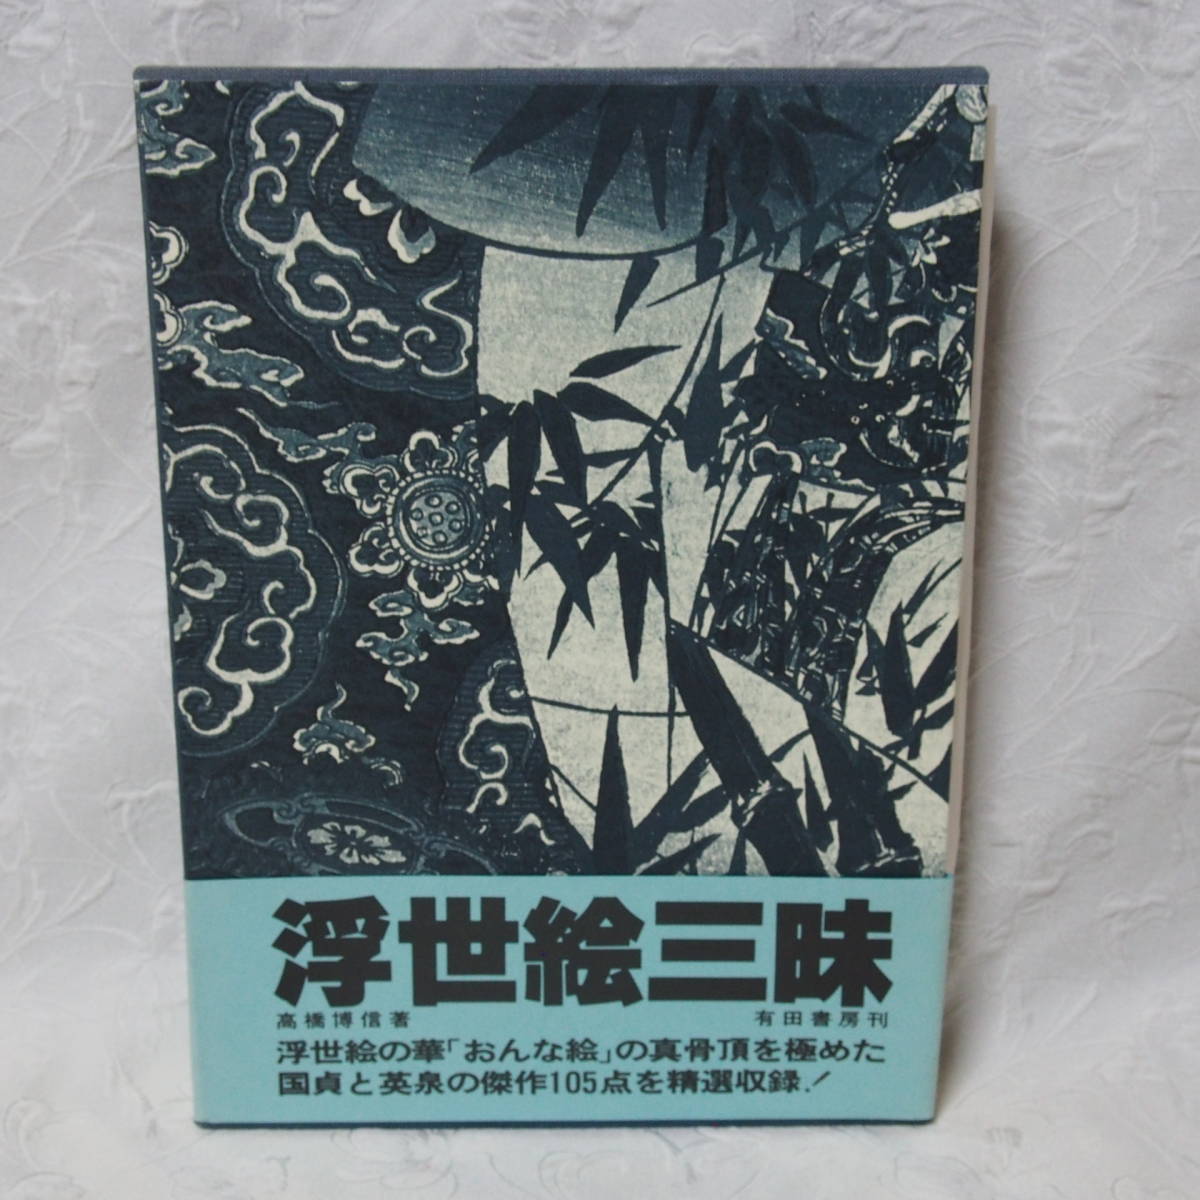 有价值的, 稀有的, 和收藏版!! 高品质书籍浮世绘三昧 / 高桥博信 / 12月15日出版, 1980年(当时的价格：, 5000 日元 ), 绘画, 浮世绘, 印刷, 一位美丽女人的画像